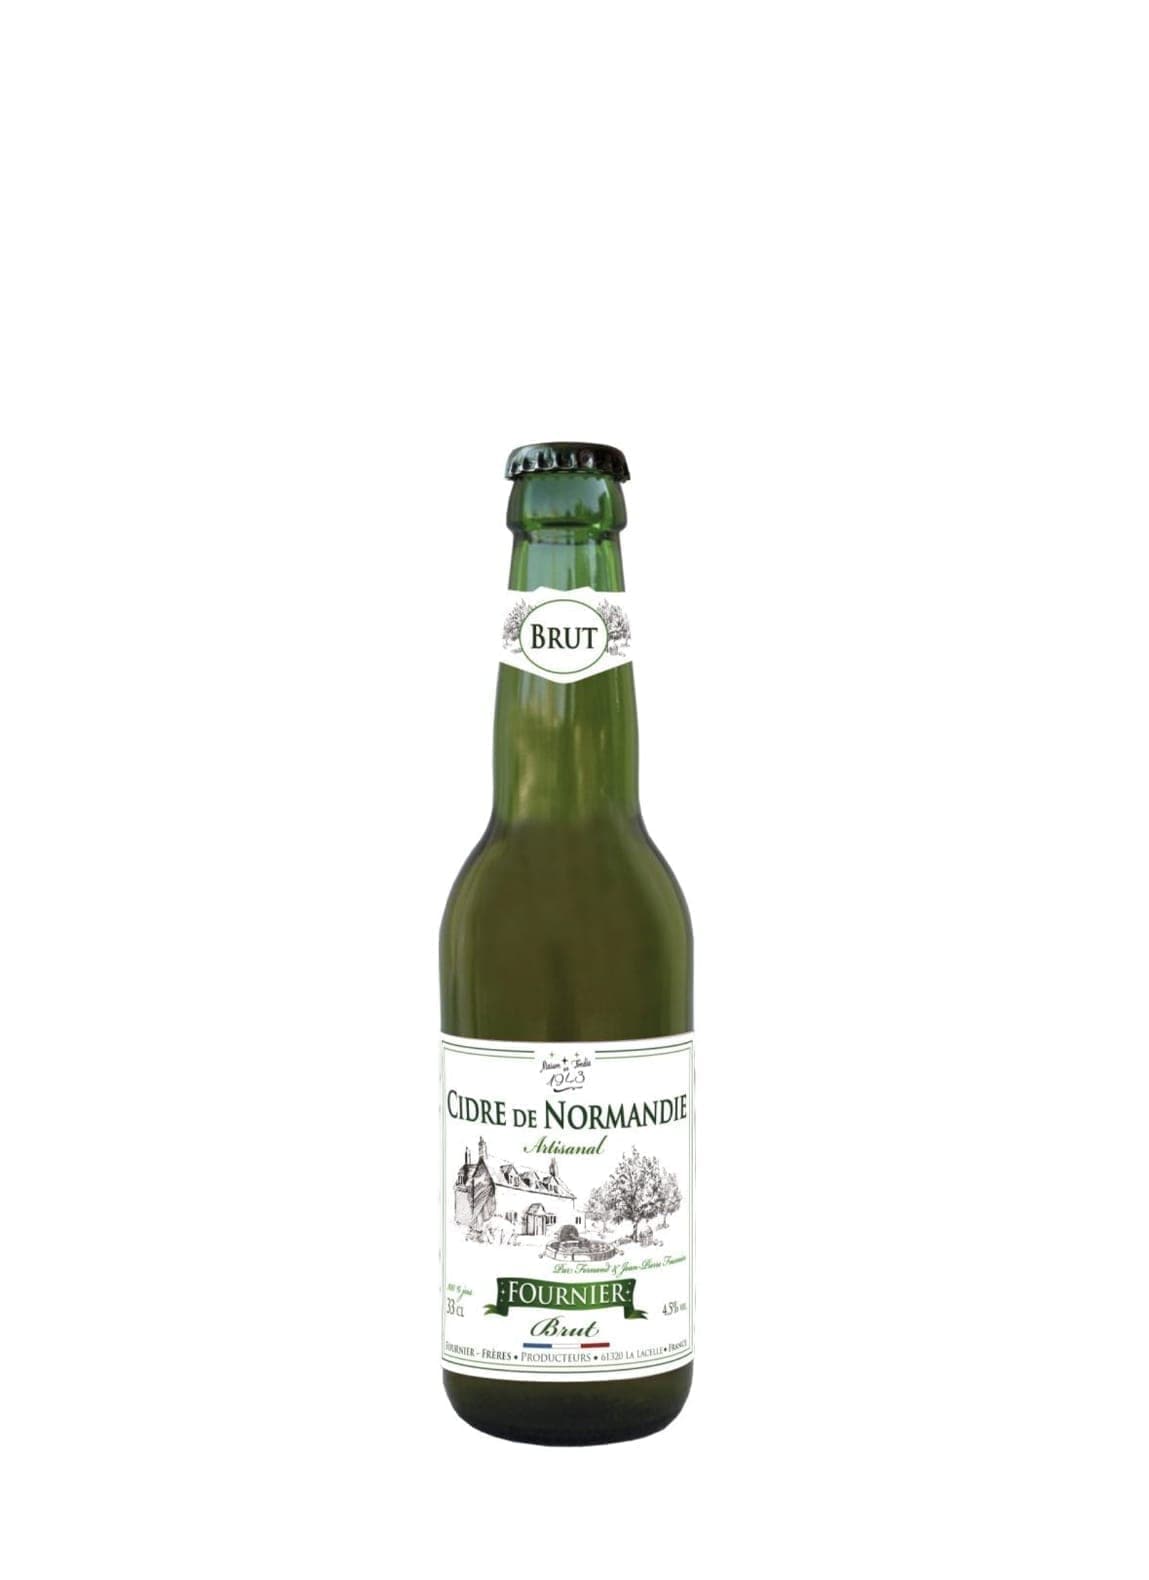 Fournier Brut Cidre de Normandie (dry apple cider) Artisanal 4.5% 330ml | Hard Cider | Shop online at Spirits of France